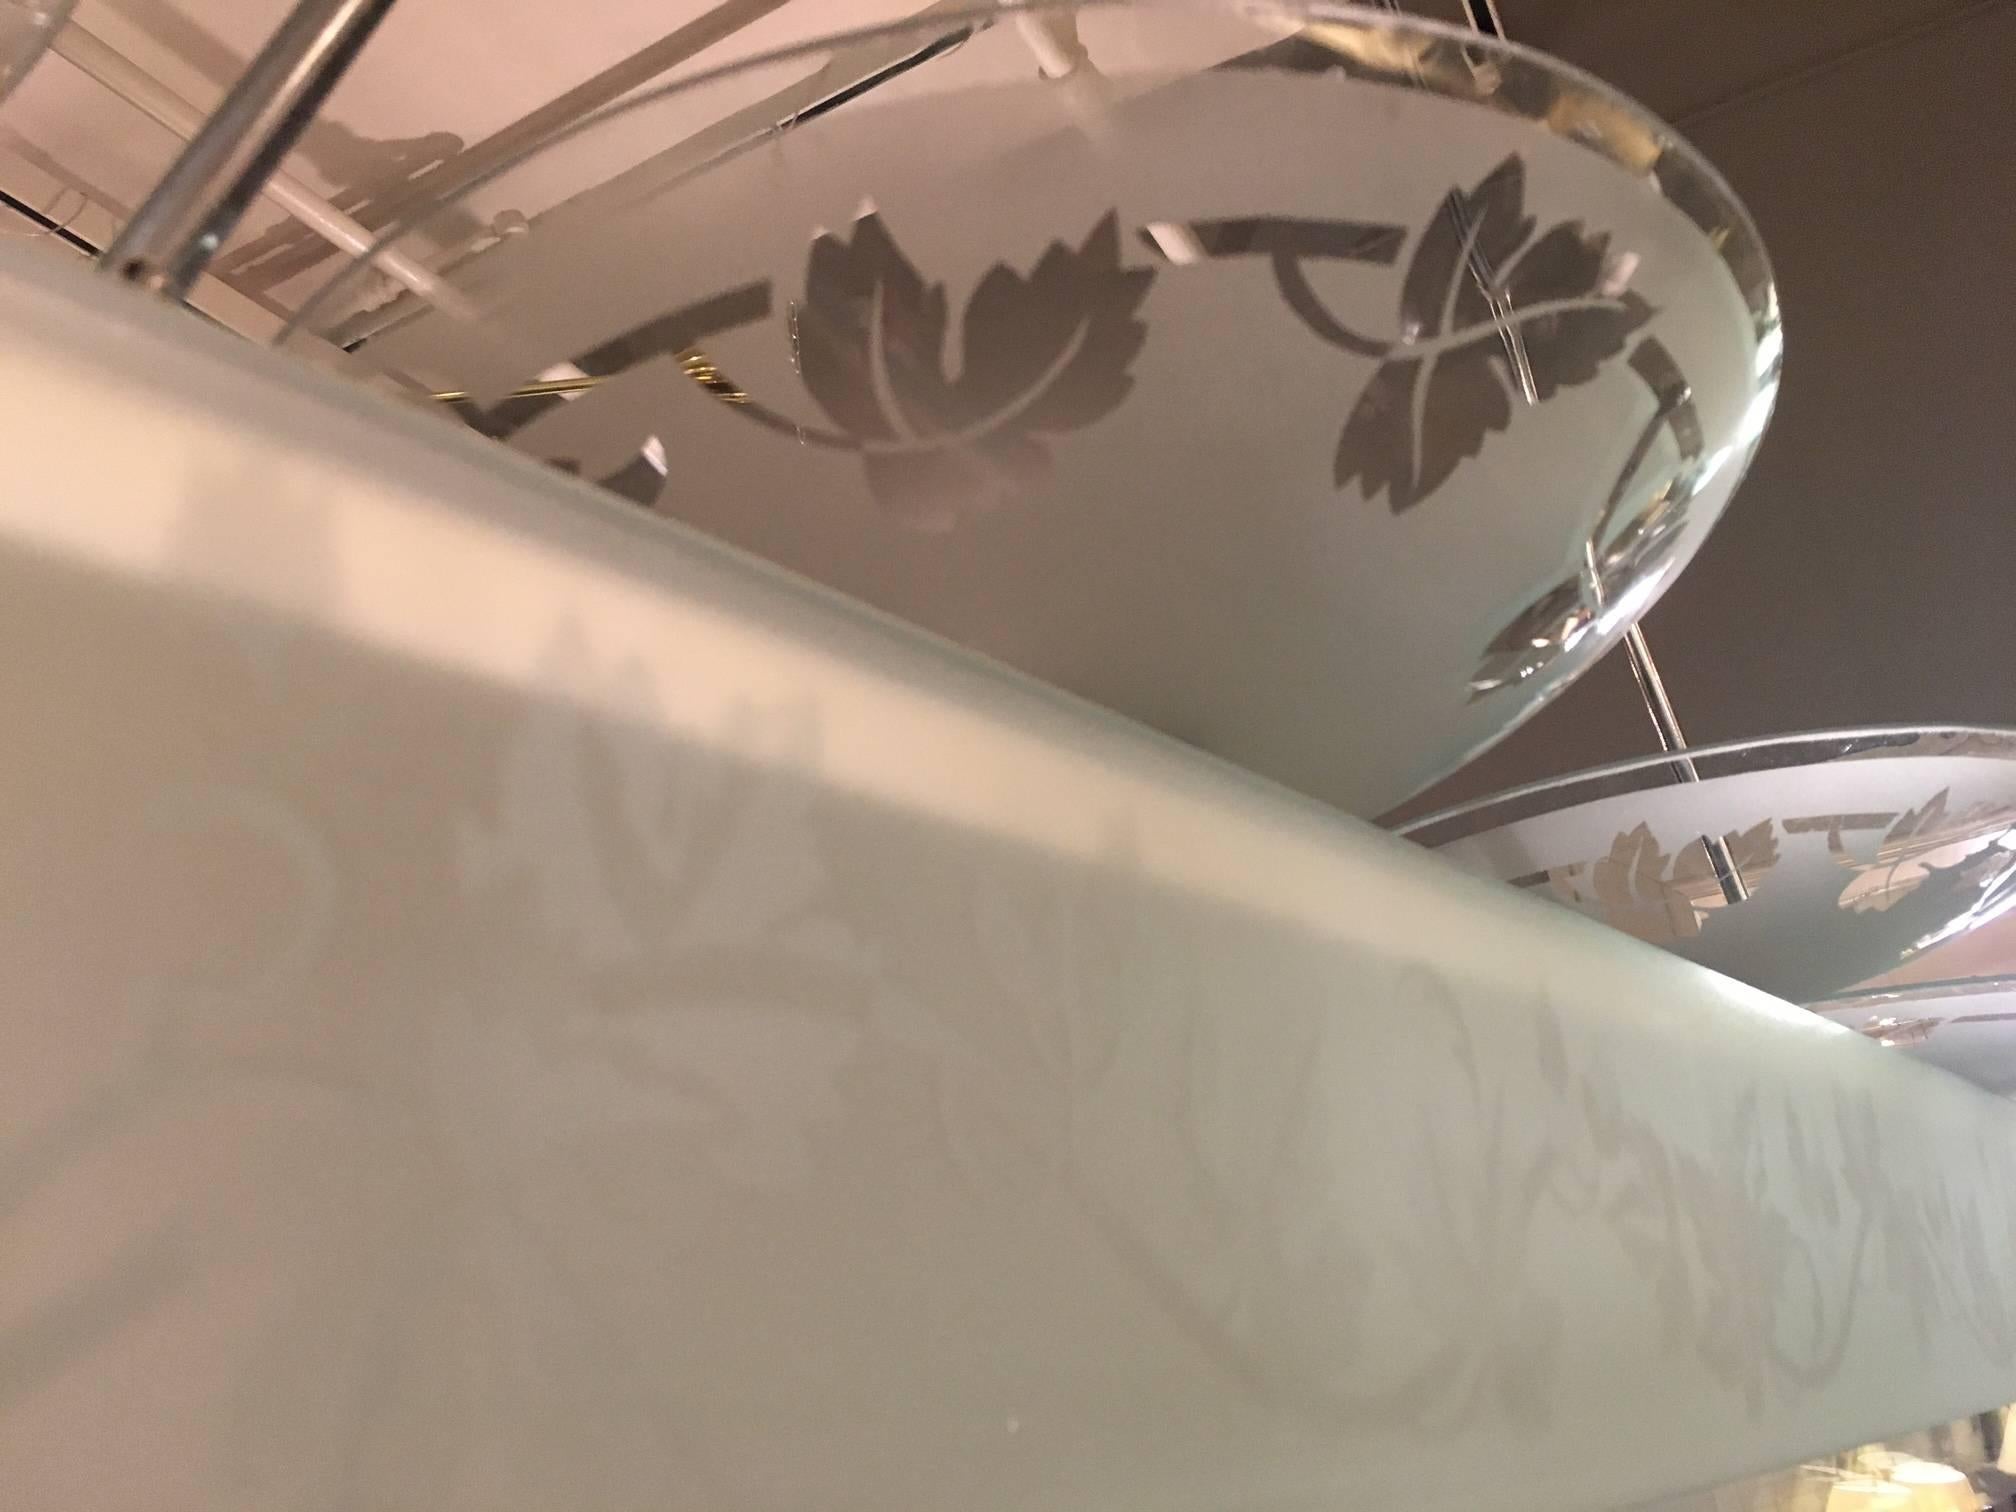 Quatre plats en verre, gravés de couronnes stylisées, montés sur une longue structure chromée éclairée, avec des parois en verre gravées de la même façon, contenant quatre lamelles de verre, suspendues à deux tiges chromées et à une